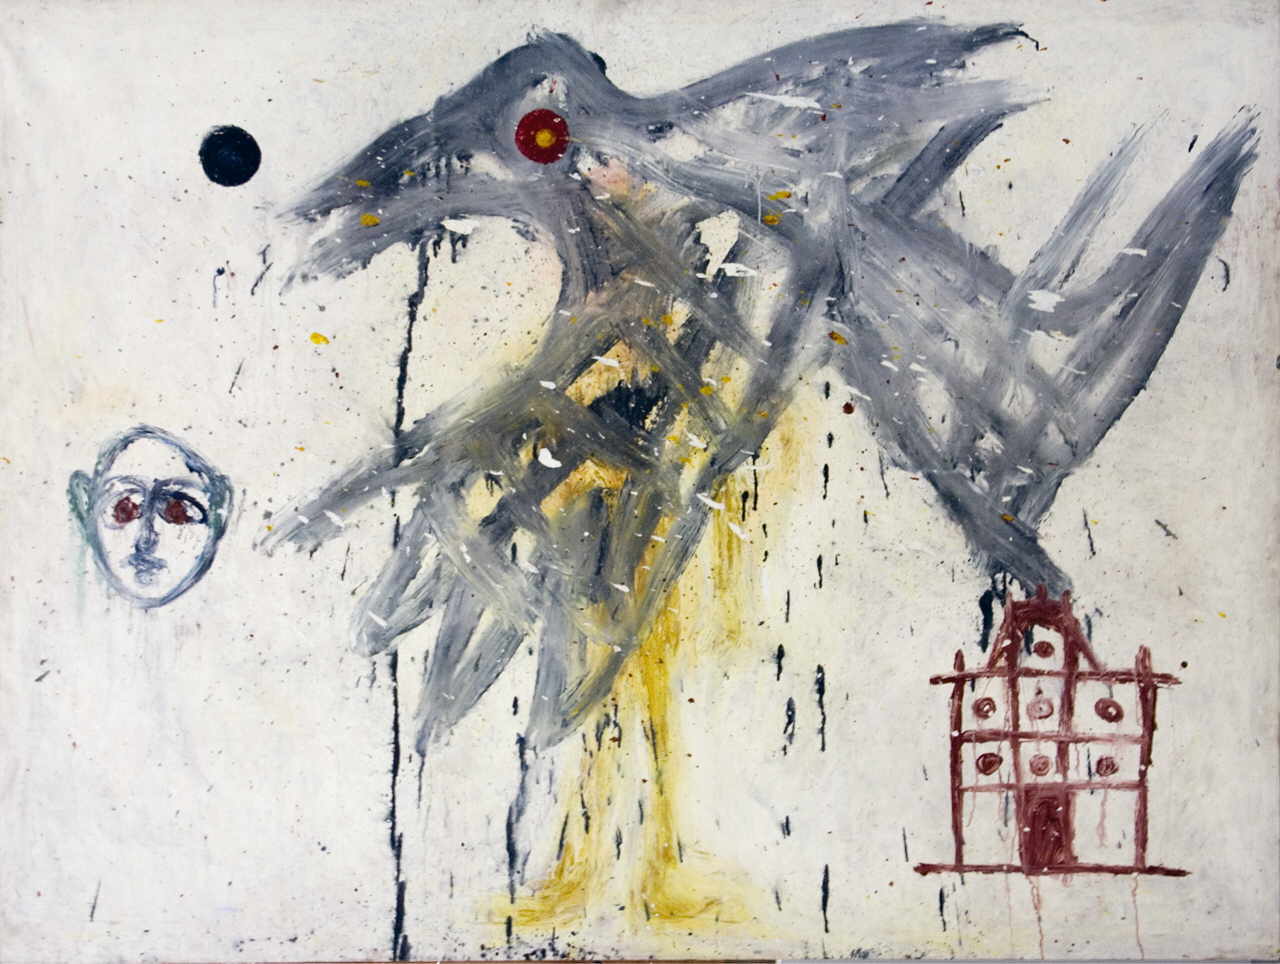 Garcia-Sevilla Ferran 
"Meroe 6", 1984
Acryl / Leinwand
195 x 260 cm